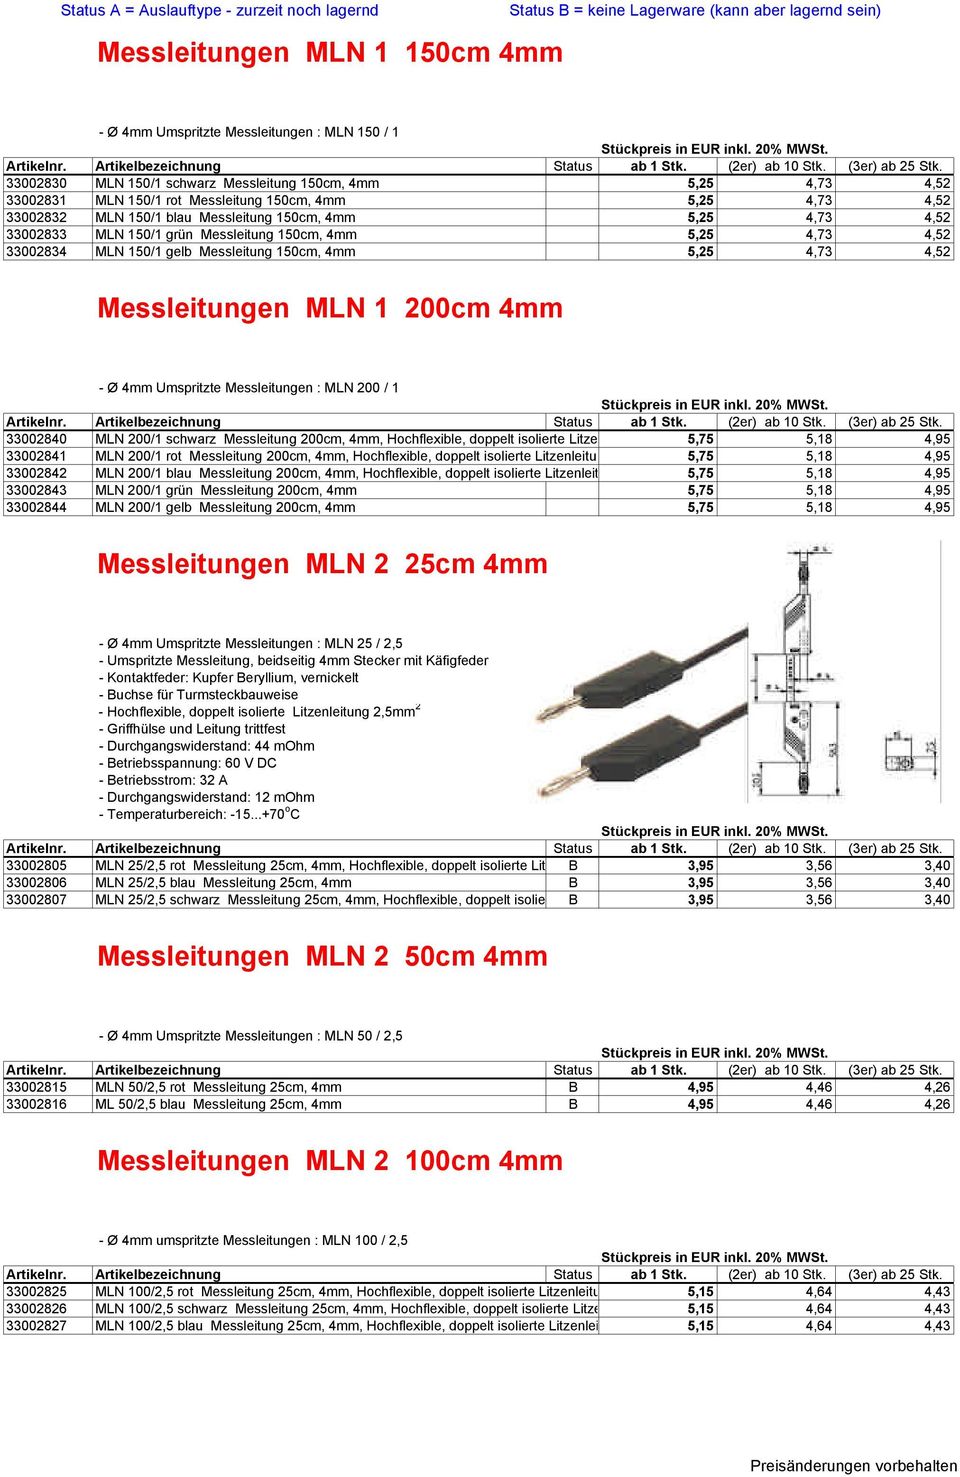 Messleitungen MLN 1 200cm 4mm - Ø 4mm Umspritzte Messleitungen : MLN 200 / 1 33002840 MLN 200/1 schwarz Messleitung 200cm, 4mm, Hochflexible, doppelt isolierte Litzenleitung 1 mm²,16a, 5,75